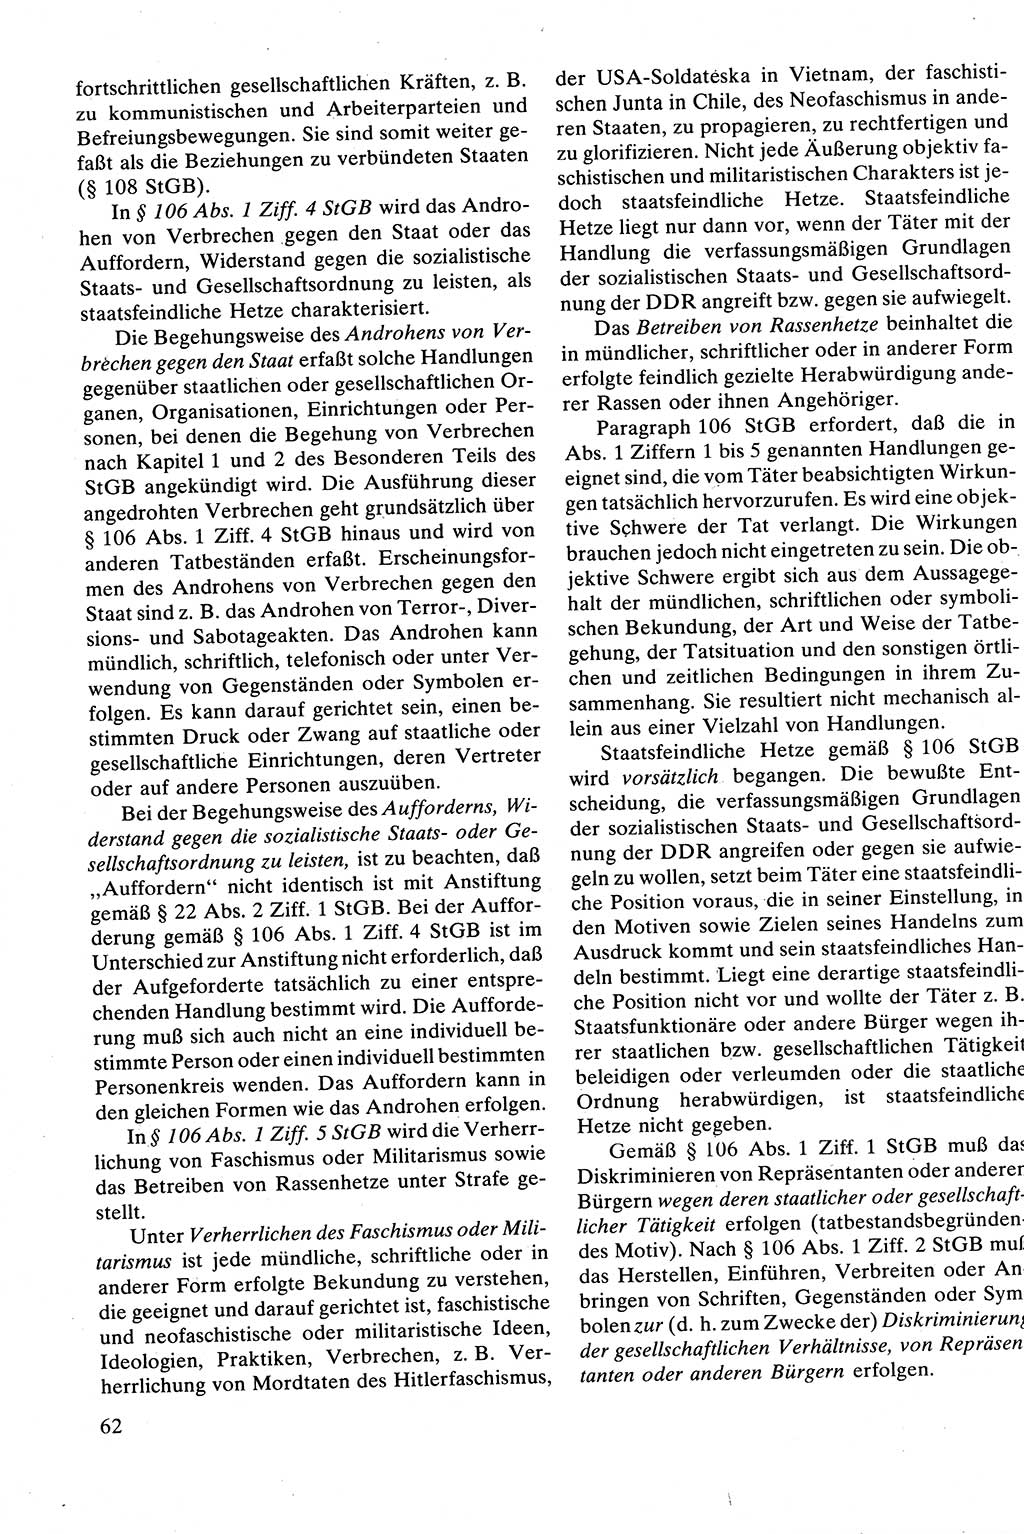 Strafrecht [Deutsche Demokratische Republik (DDR)], Besonderer Teil, Lehrbuch 1981, Seite 62 (Strafr. DDR BT Lb. 1981, S. 62)